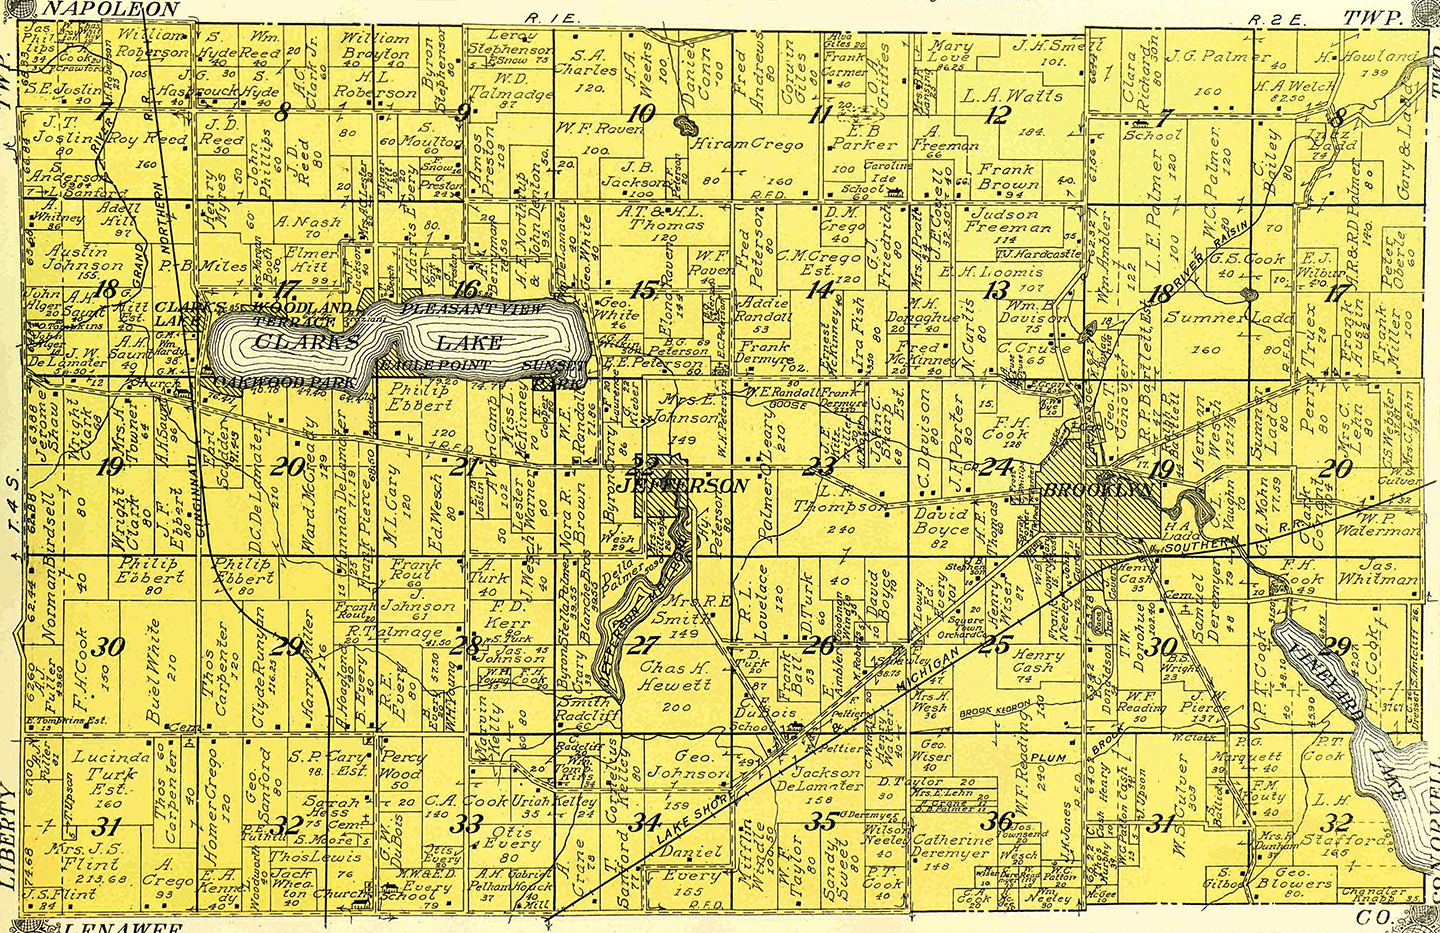 1911 Columbia Township, Michigan landownership map